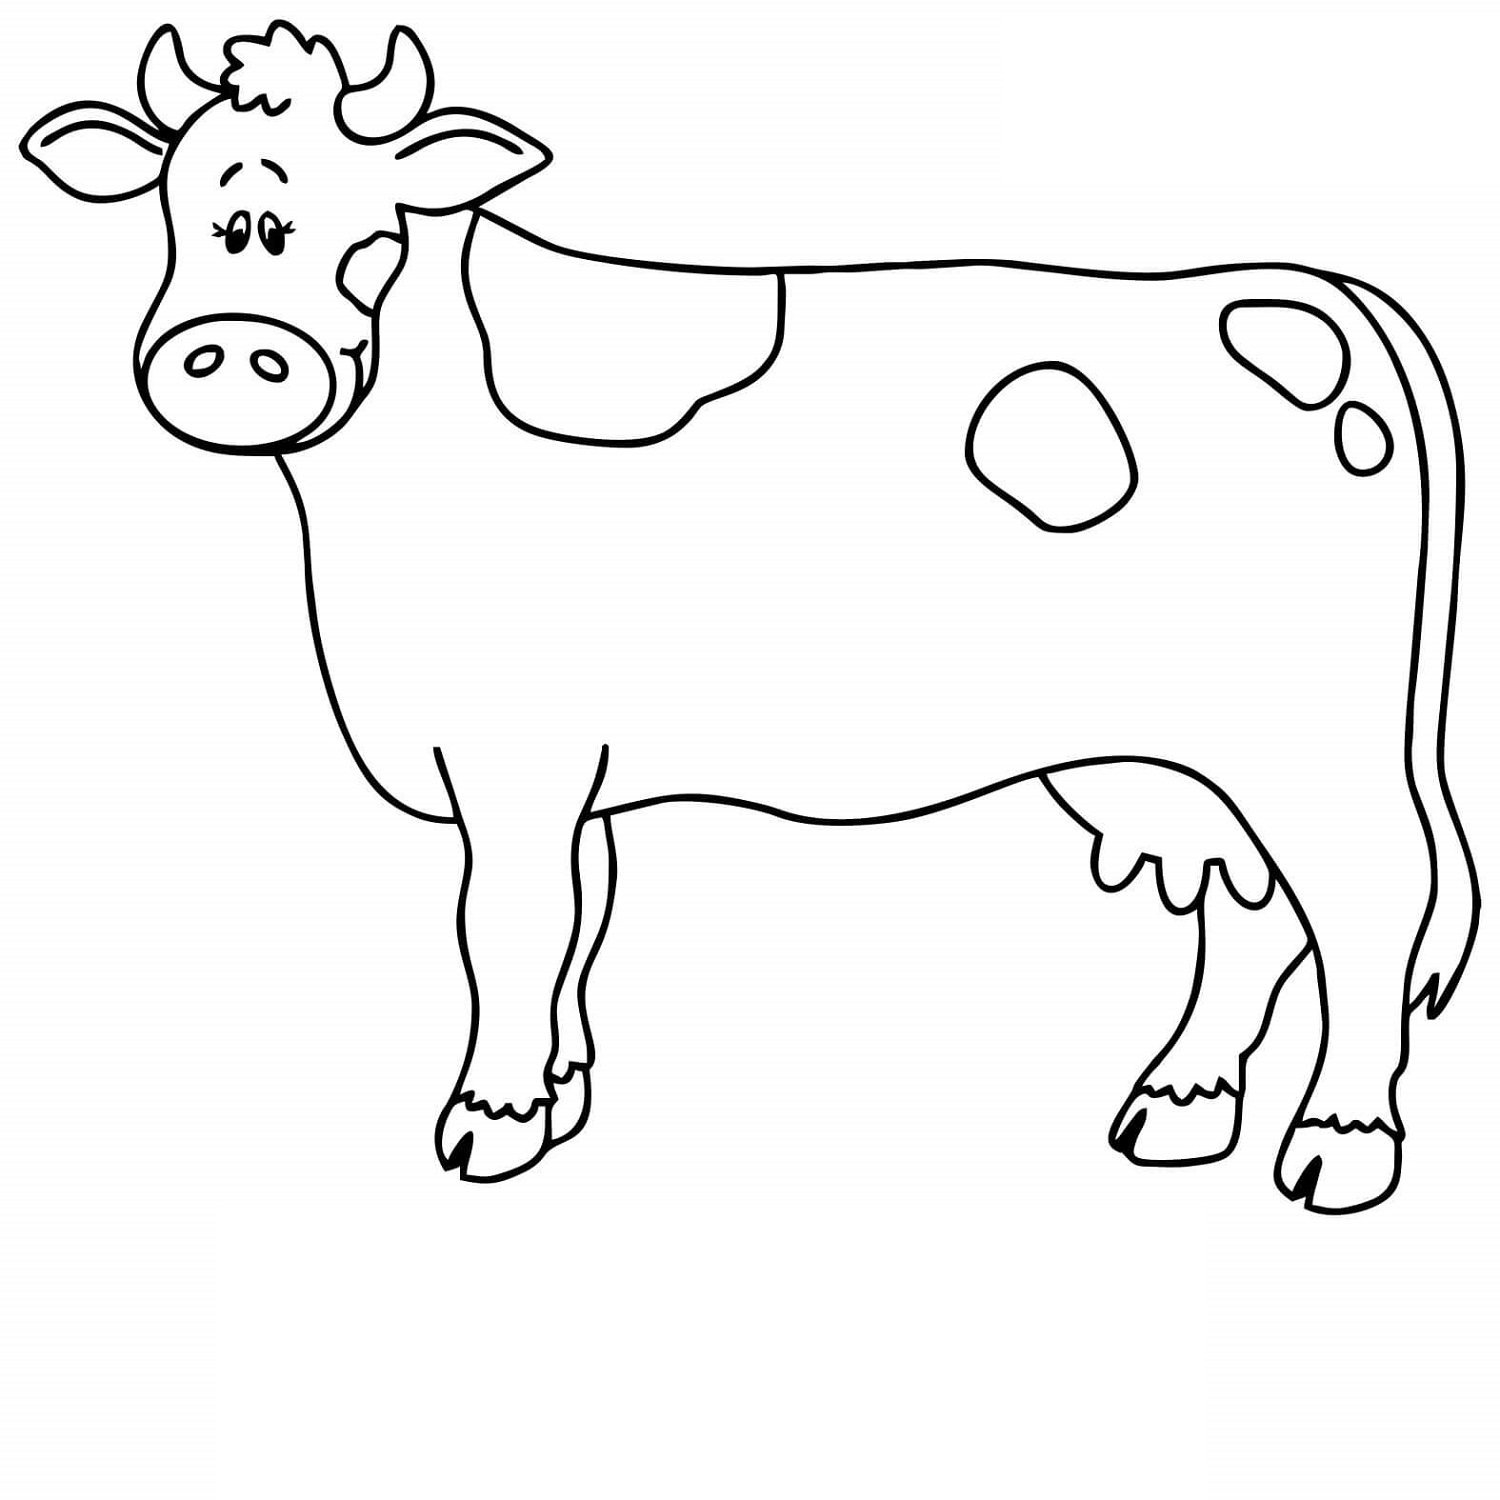 Раскраски коровки для детей. Раскраска корова. Корова раскраска для детей. Корова контур. Корова трафарет для рисования.